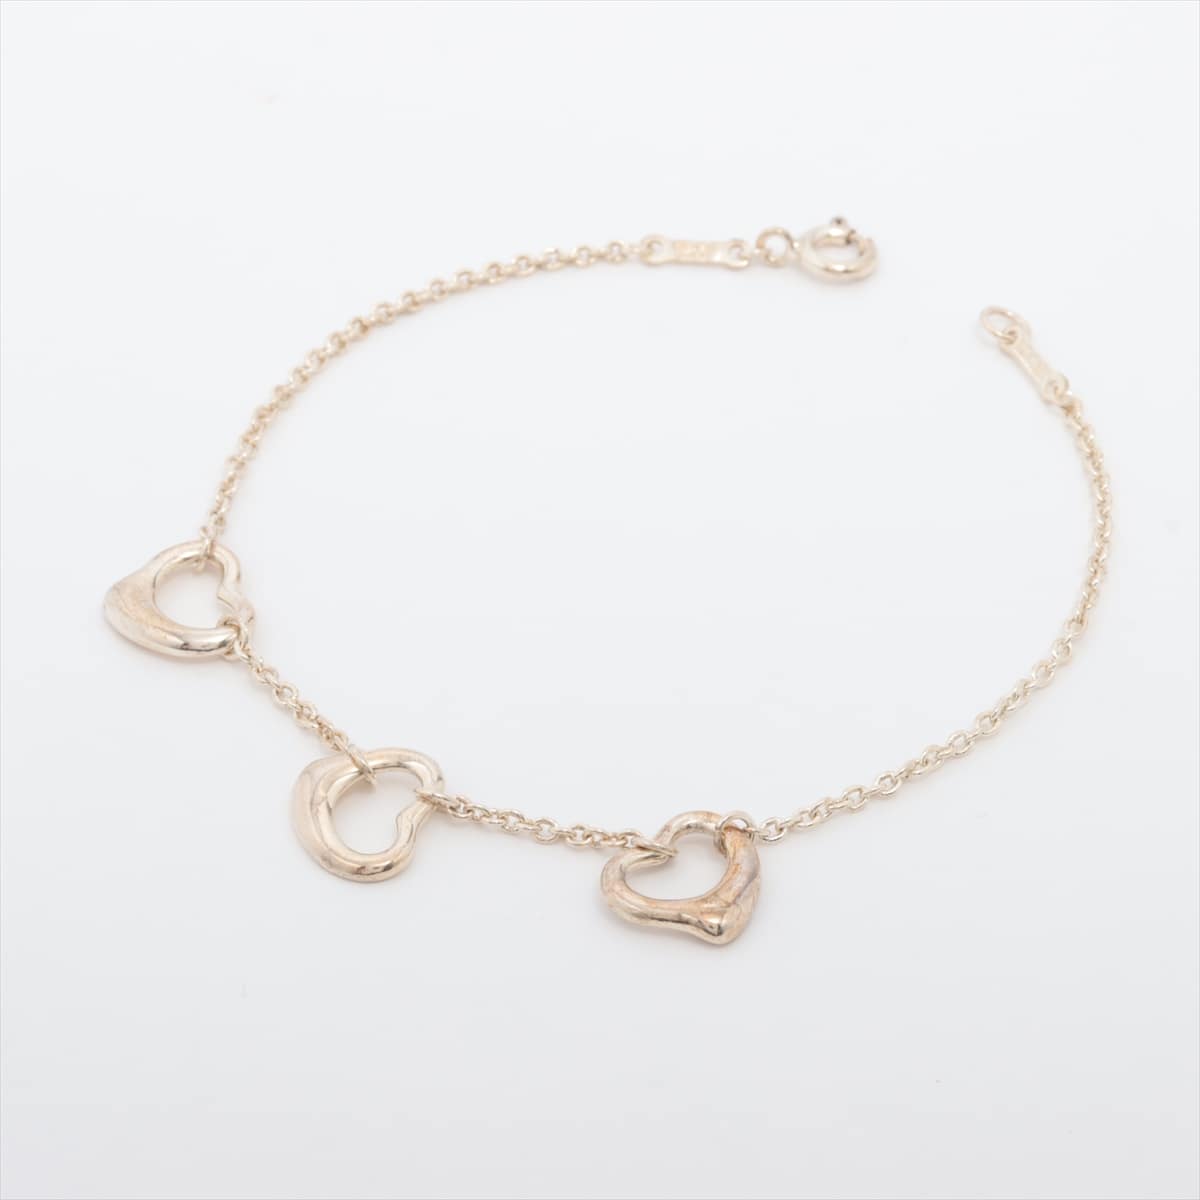 Tiffany Three Open Heart Bracelet 925 2.9g Silver